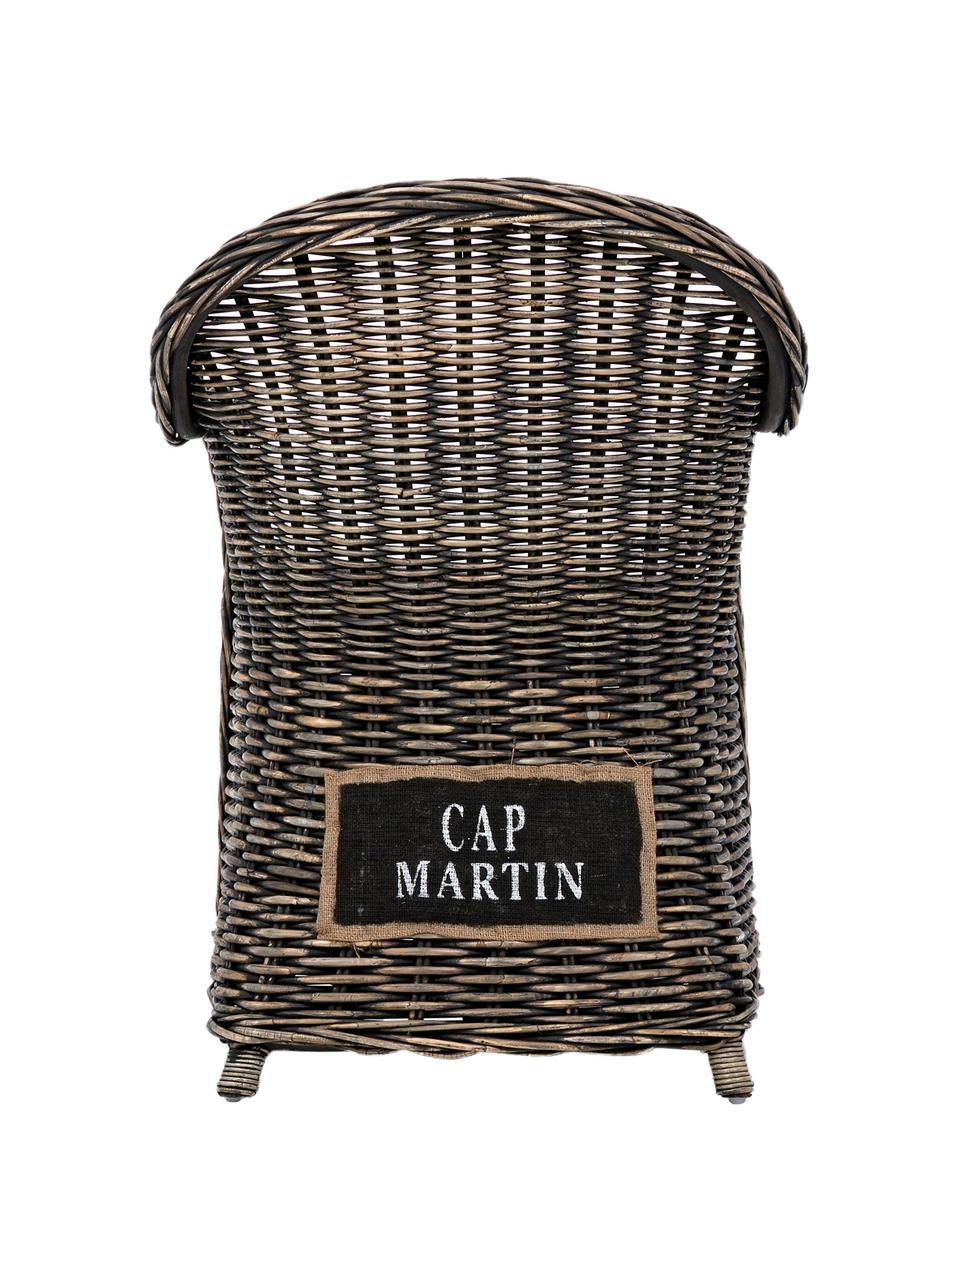 Rattan-Armlehnstuhl Martin mit Sitzauflage, Bezug: Baumwolle, Rattan, Schwarz, Weiß, 60 x 89 cm